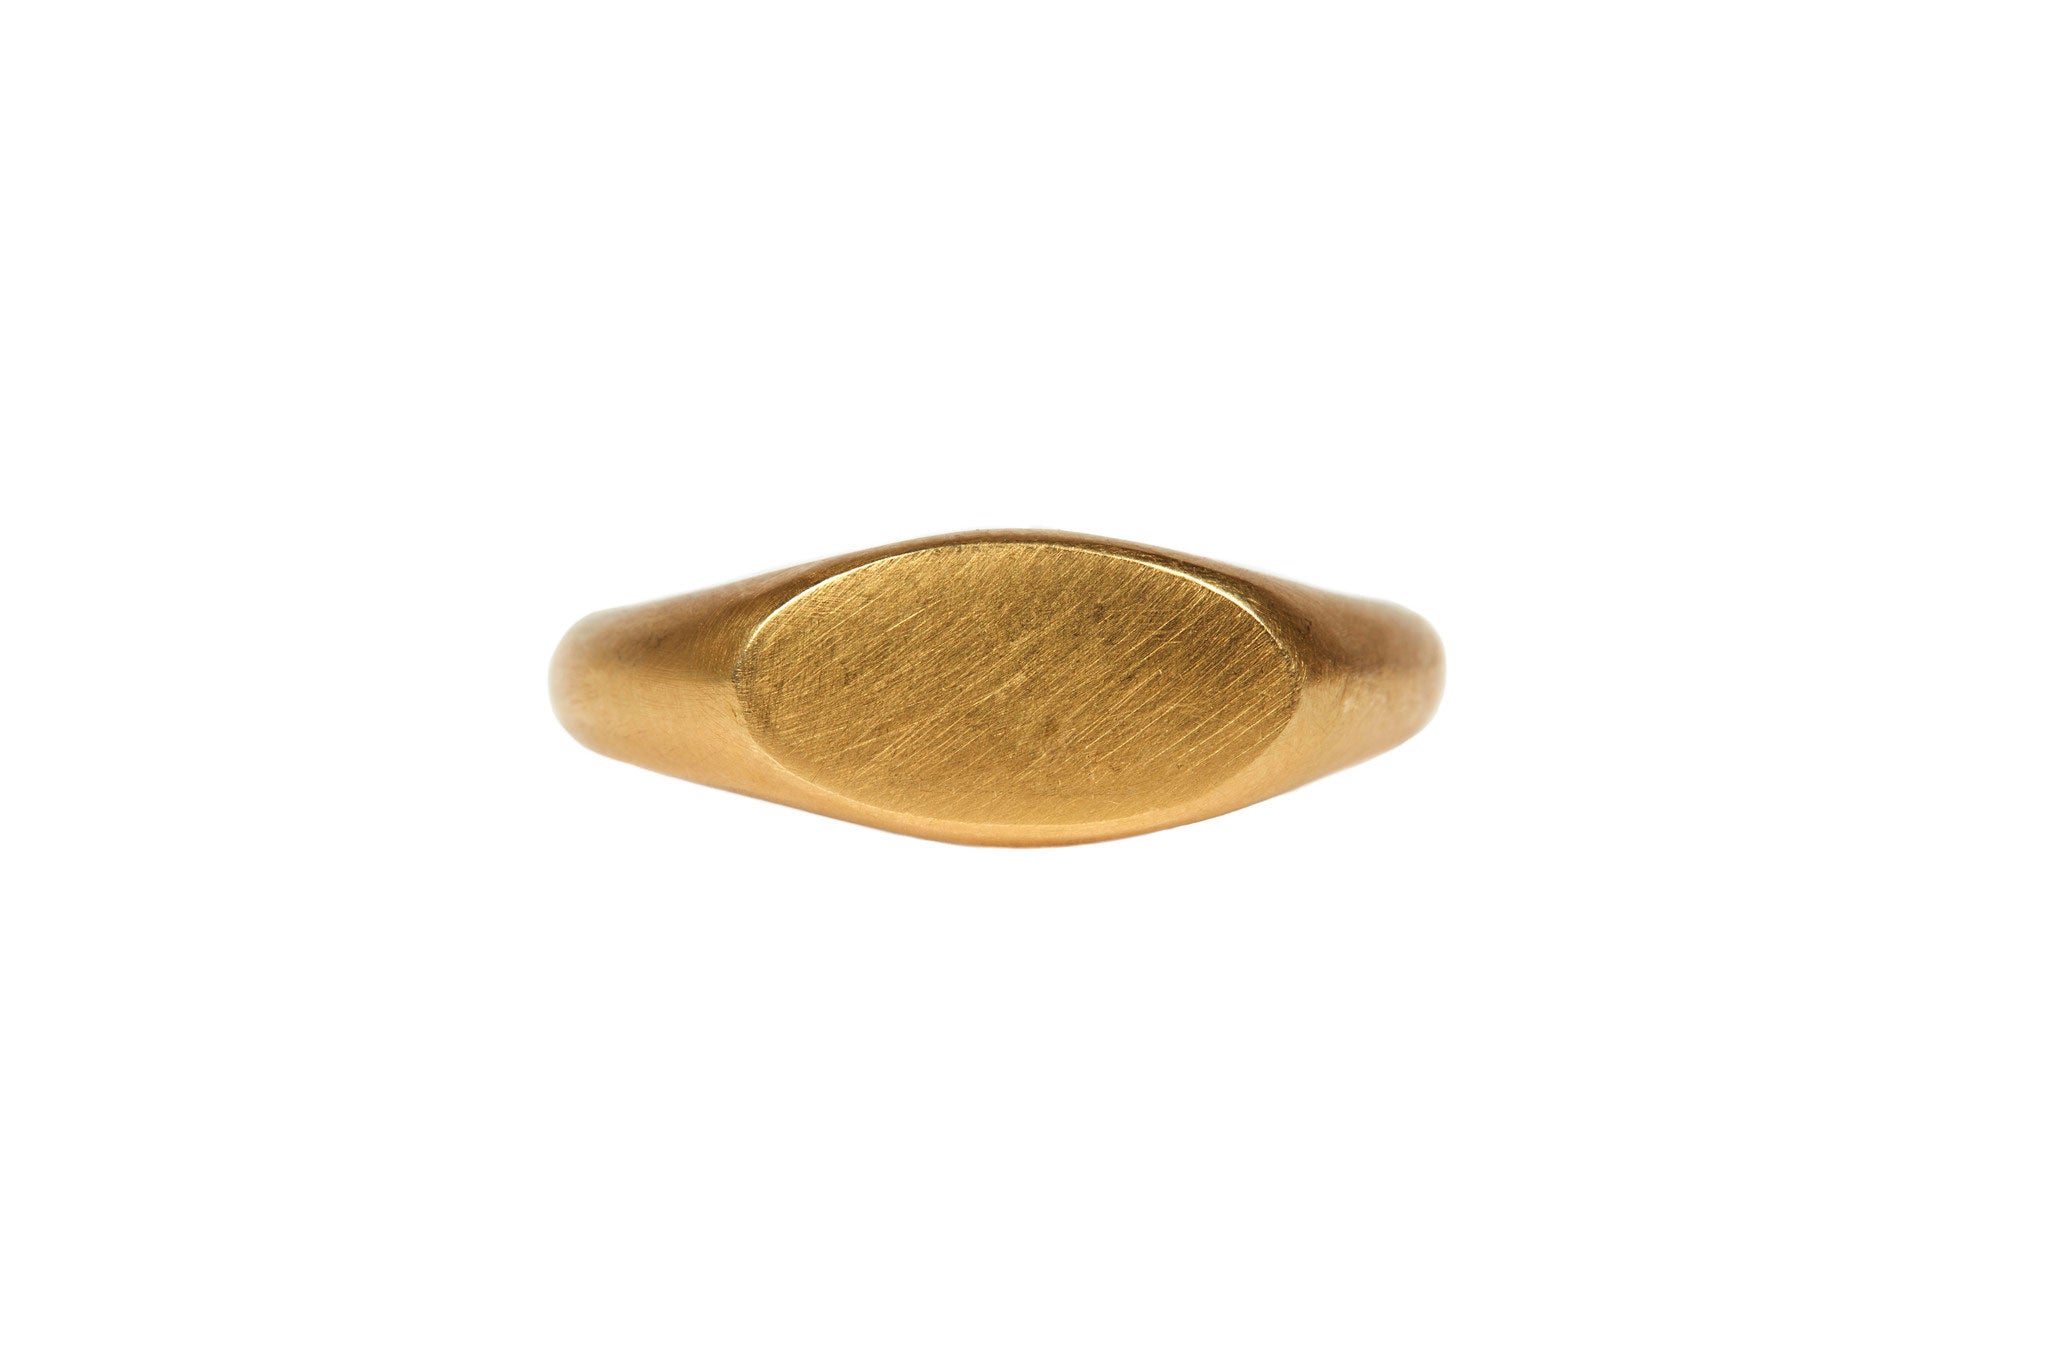 darius jewels hand made fine jewelry 18k yellow gold signet ring v.1 darius khonsary